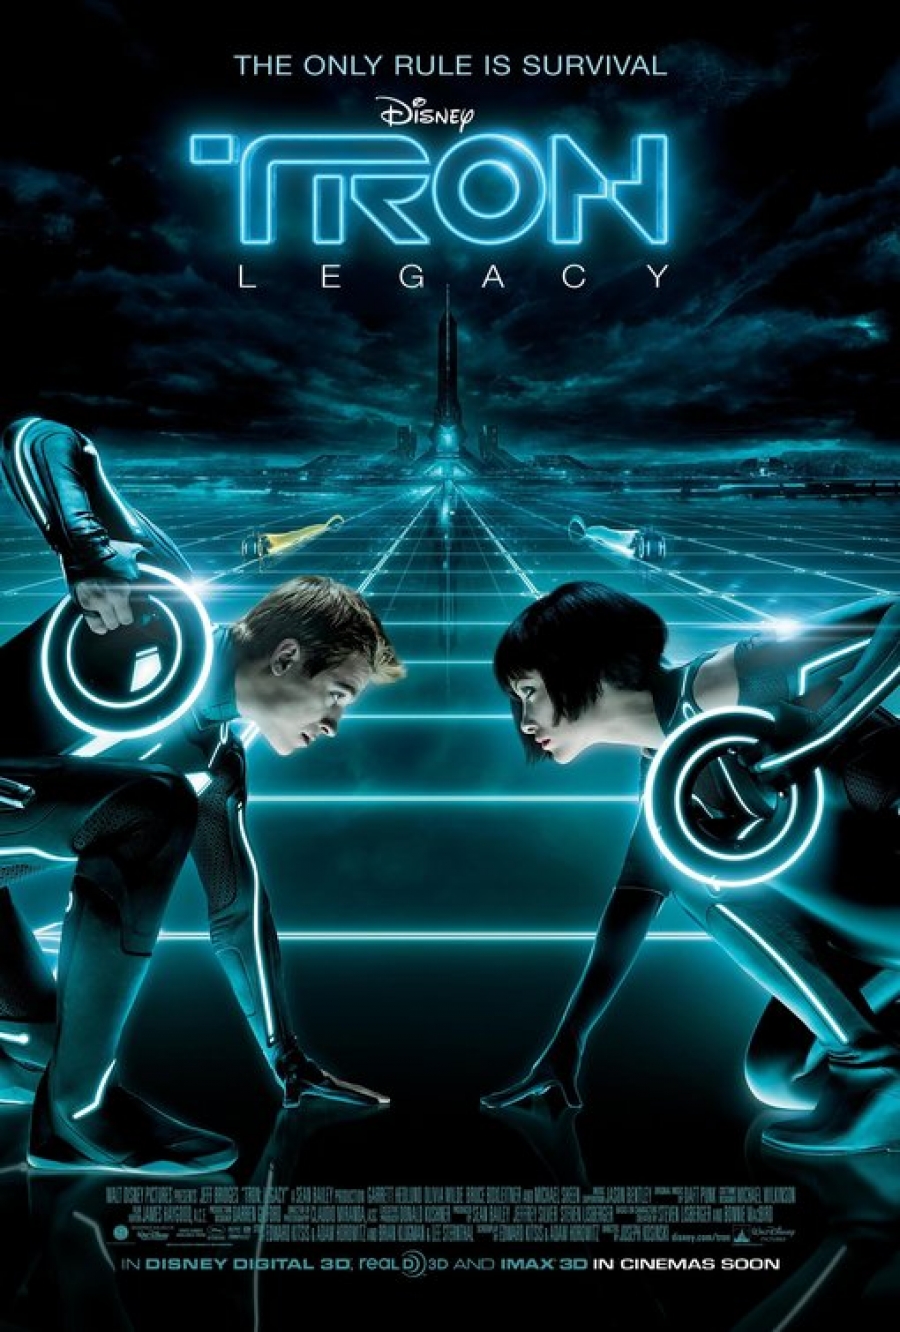 ดูหนังออนไลน์ฟรี Tron Legacy (2010) ทรอน ล่าข้ามโลกอนาคต